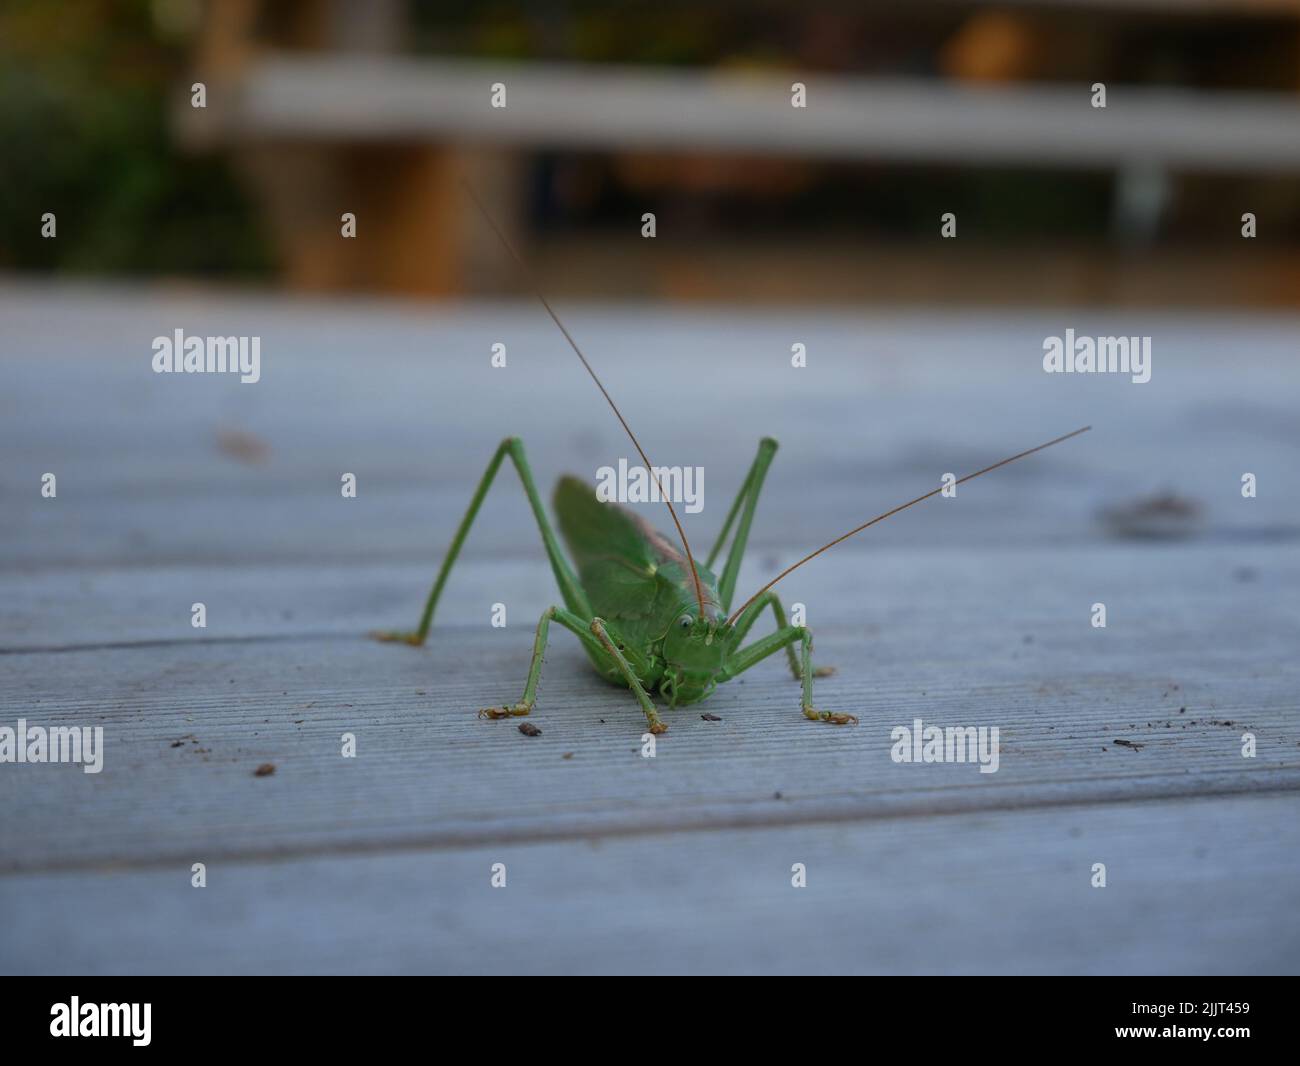 Primo piano di un cricket verde seduto su una superficie di legno. Foto Stock